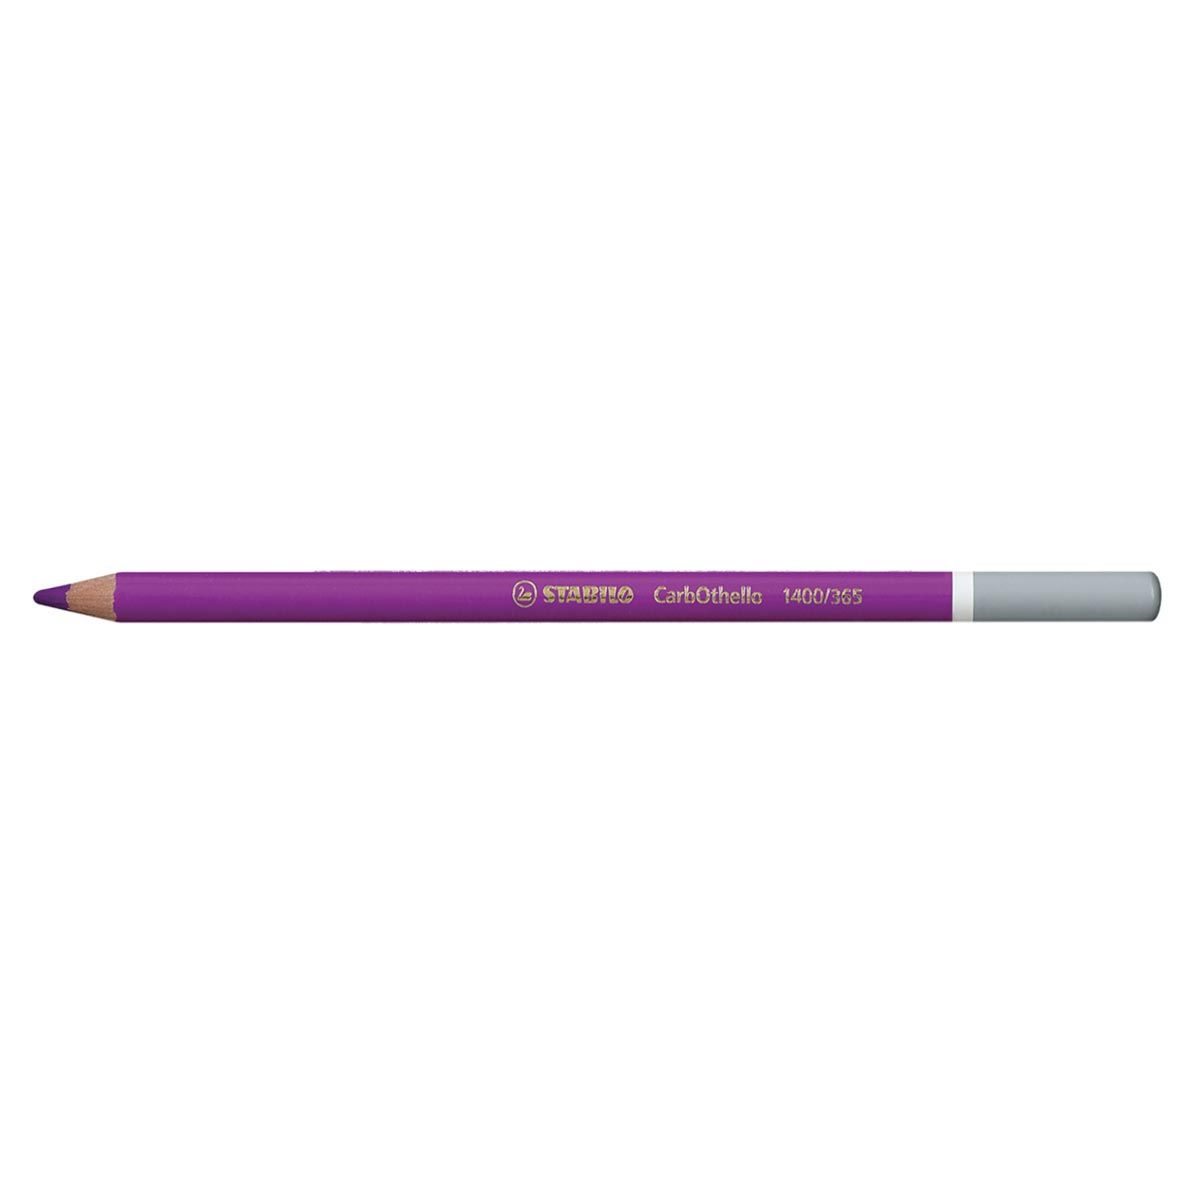 Carbothello Pastel Pencil, Violet Light 365